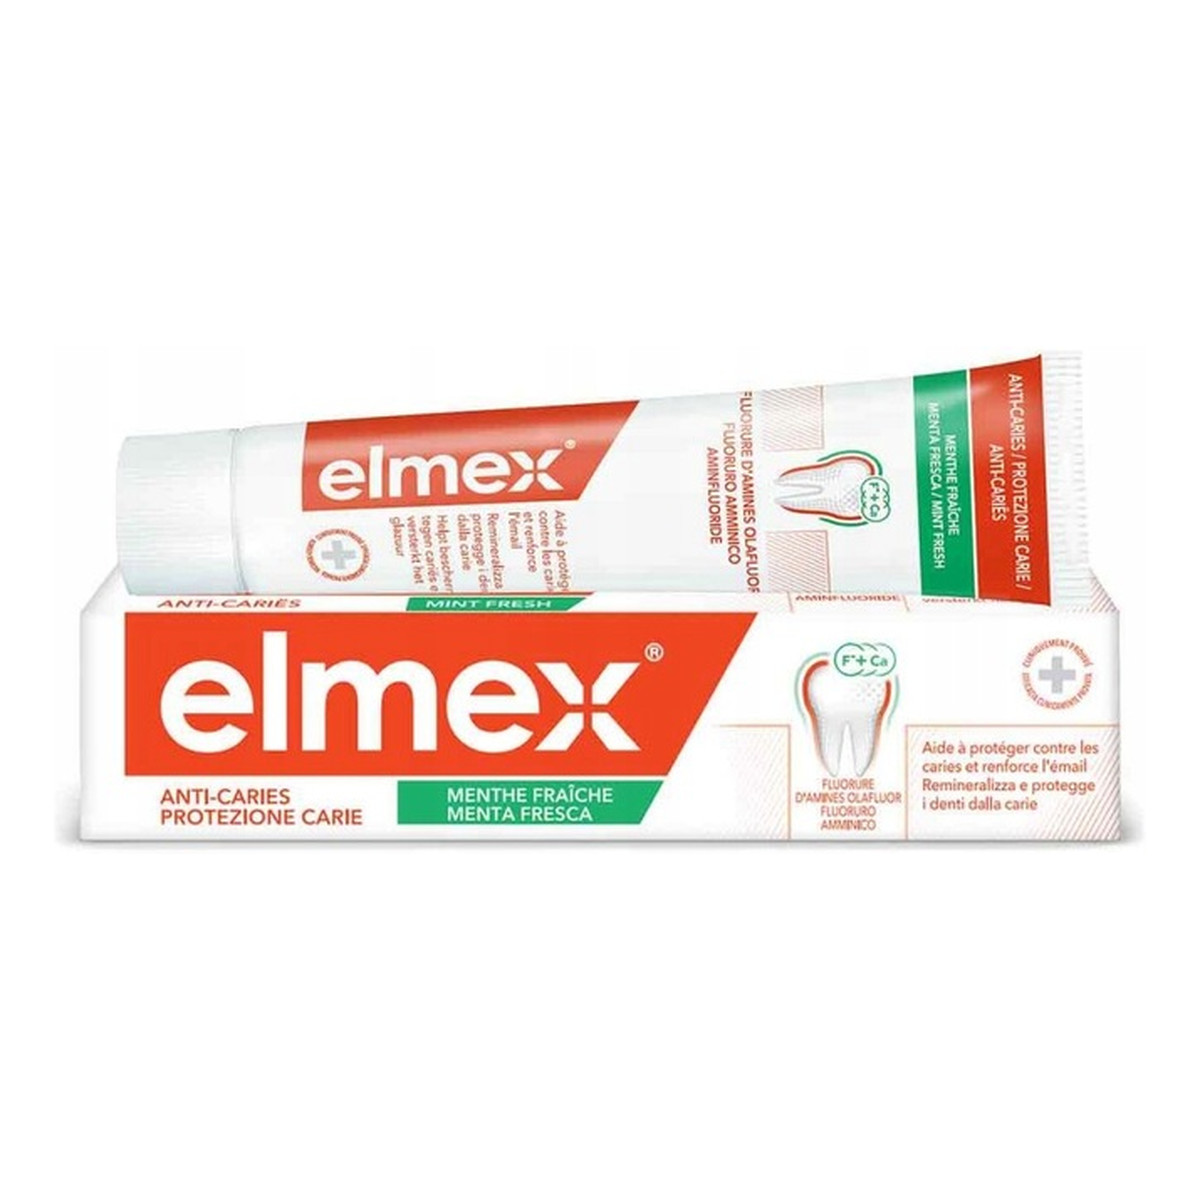 elmex Anti-Caries Protezione Pasta do zębów 75ml